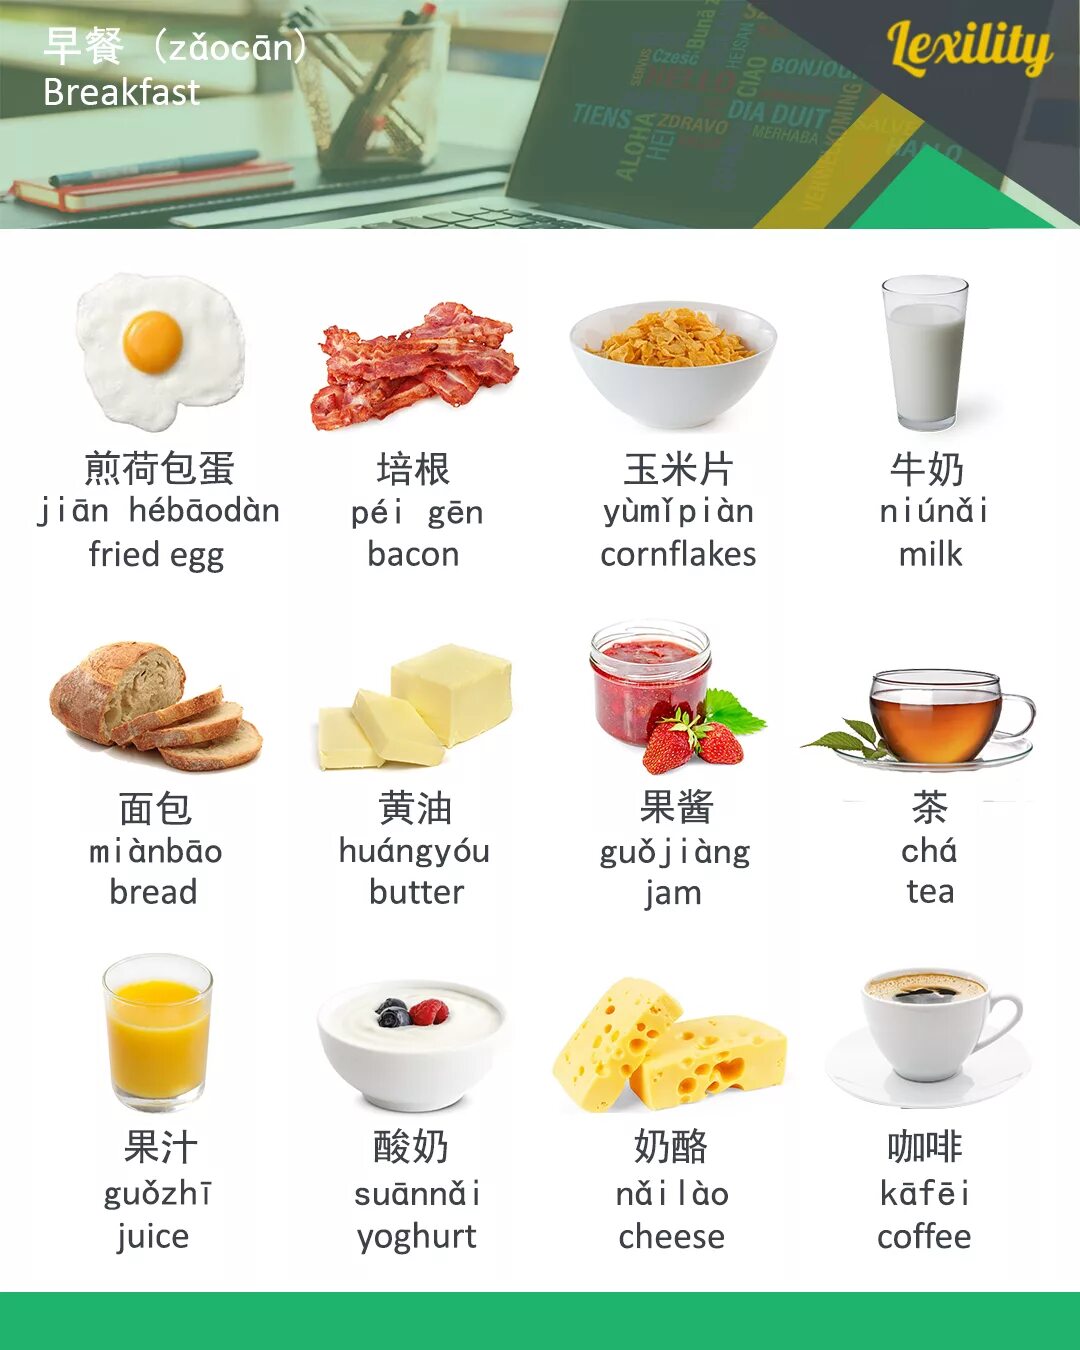 Завтрак по английскому языку. Продукты на завтрак на английском. Еда для завтрака на английском языке. Завтраки на английском языке с переводом. Переведи завтрак на английский